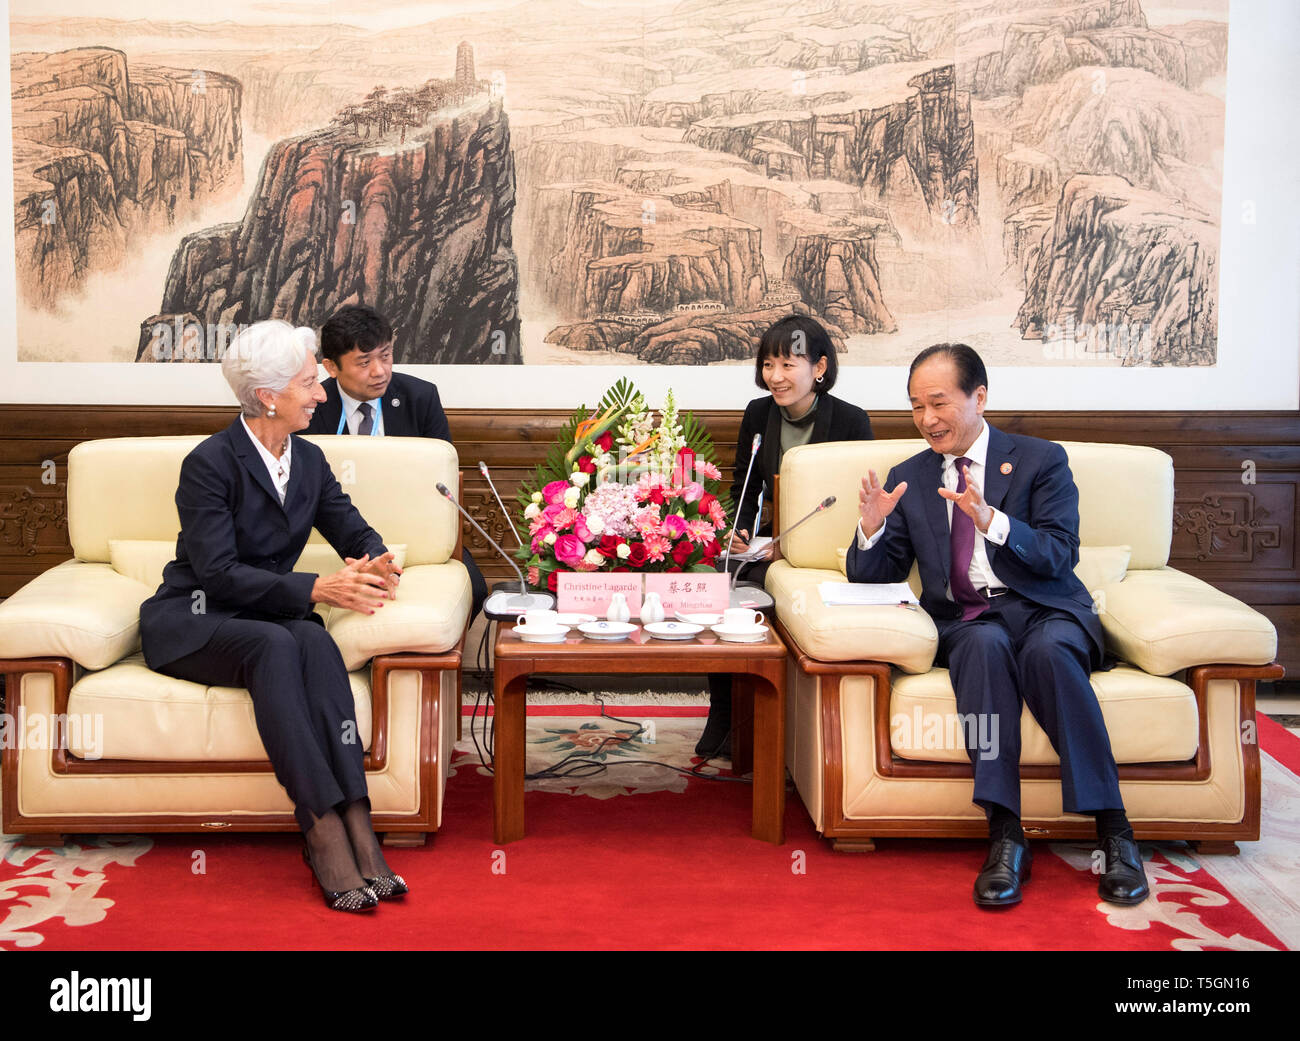 (190425) -- BEIJING, 25 de abril de 2019 (Xinhua) -- El presidente de la Agencia de Noticias Xinhua Cai Mingzhao (R) se reúne con el Fondo Monetario Internacional (FMI) Director Gerente Christine Lagarde en Beijing, capital de China, 25 de abril de 2019. Lagarde bienvenida la visita a la sede de Xinhua, Cai dijo que los medios de comunicación mundo está experimentando una transformación profunda, y Xinhua está comprometido a proporcionar información auténtica mundialmente a través de diversos canales, expresando su deseo de profundizar los intercambios y la cooperación con el FMI. (Xinhua/Li Xueren) Foto de stock